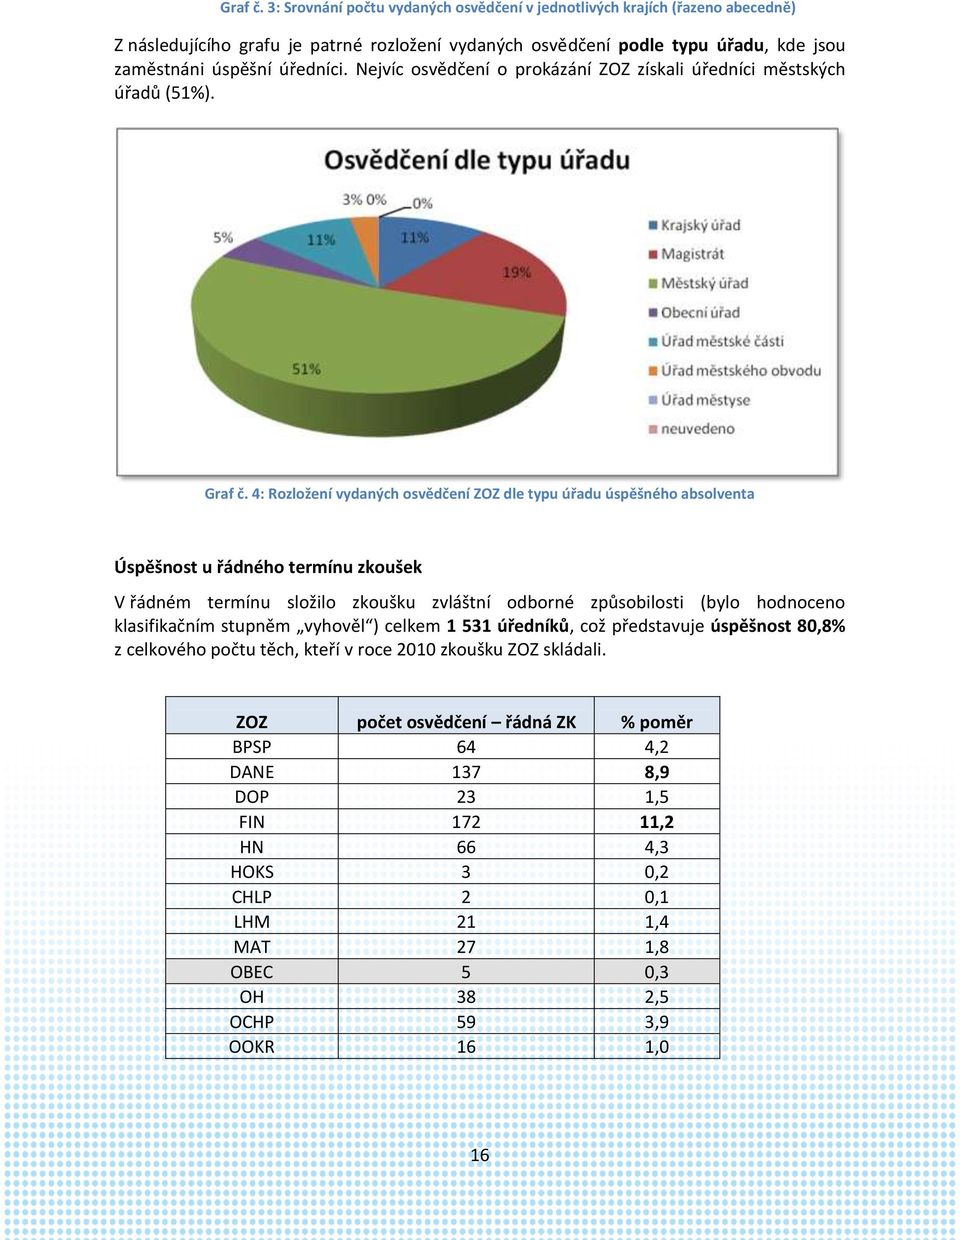 Nejvíc osvědčení o prokázání ZOZ získali úředníci městských úřadů (51%).